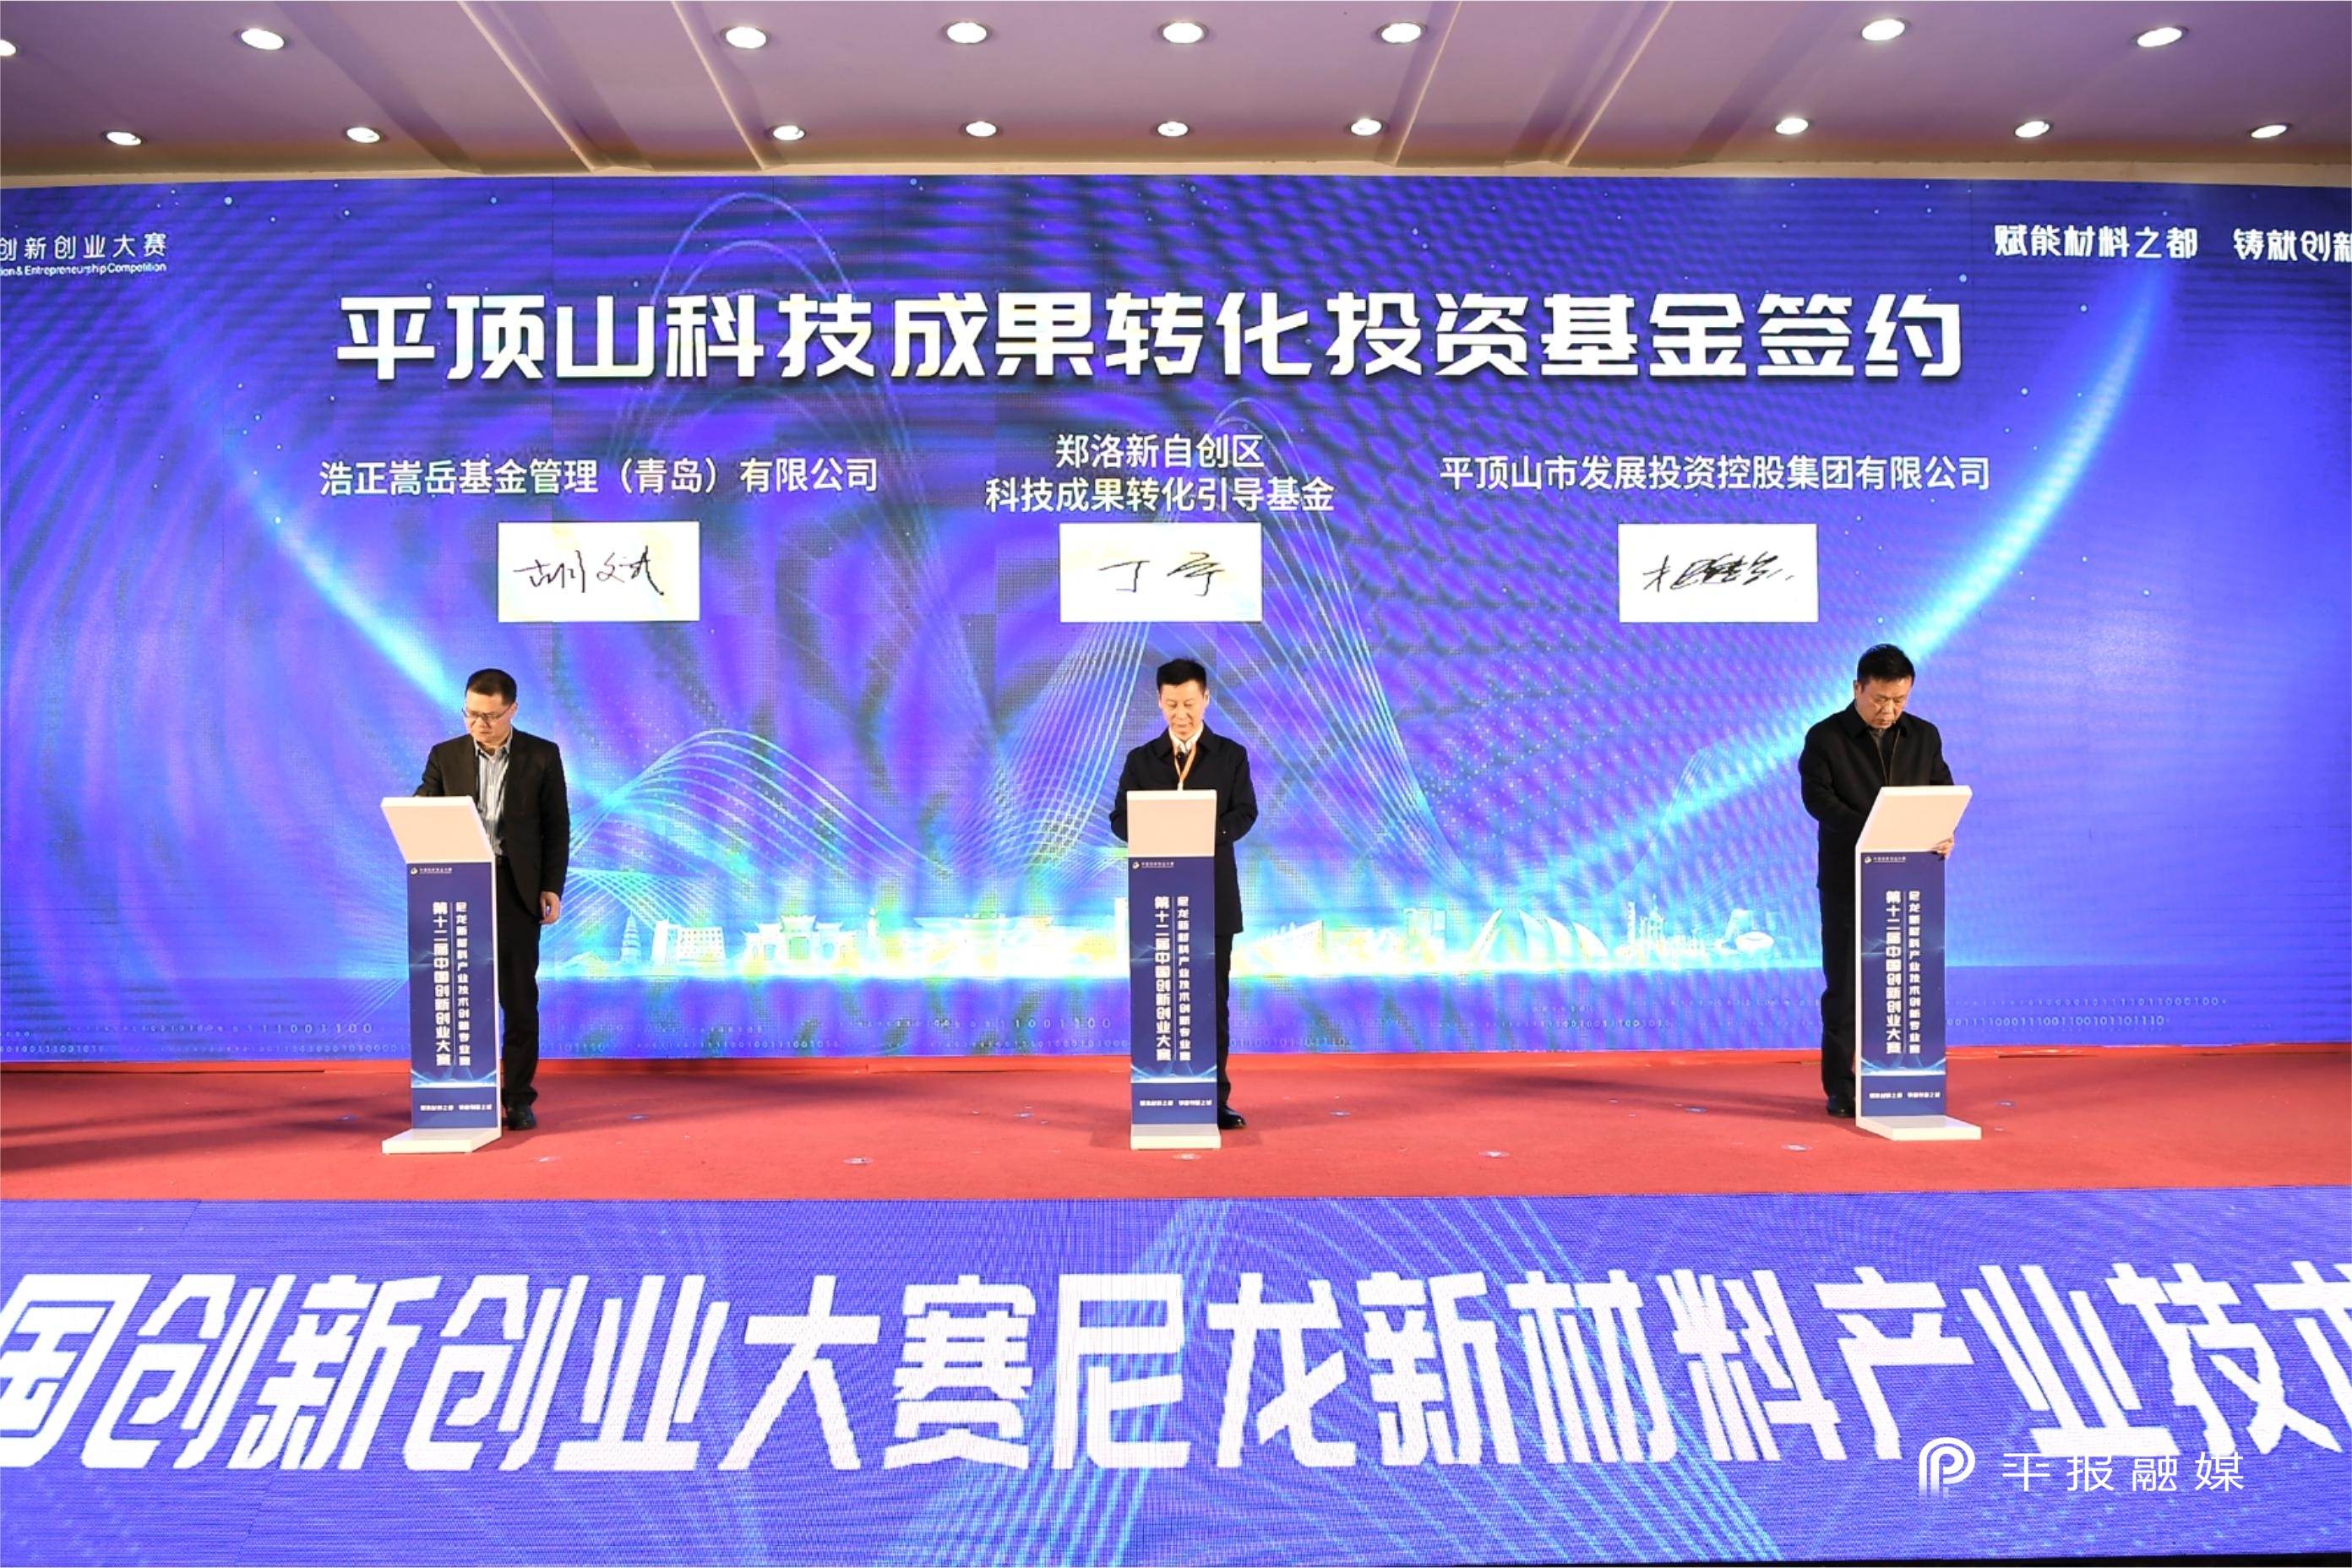 第十二届中国创新创业大赛尼龙新材料产业技术创新专业赛决赛在我市